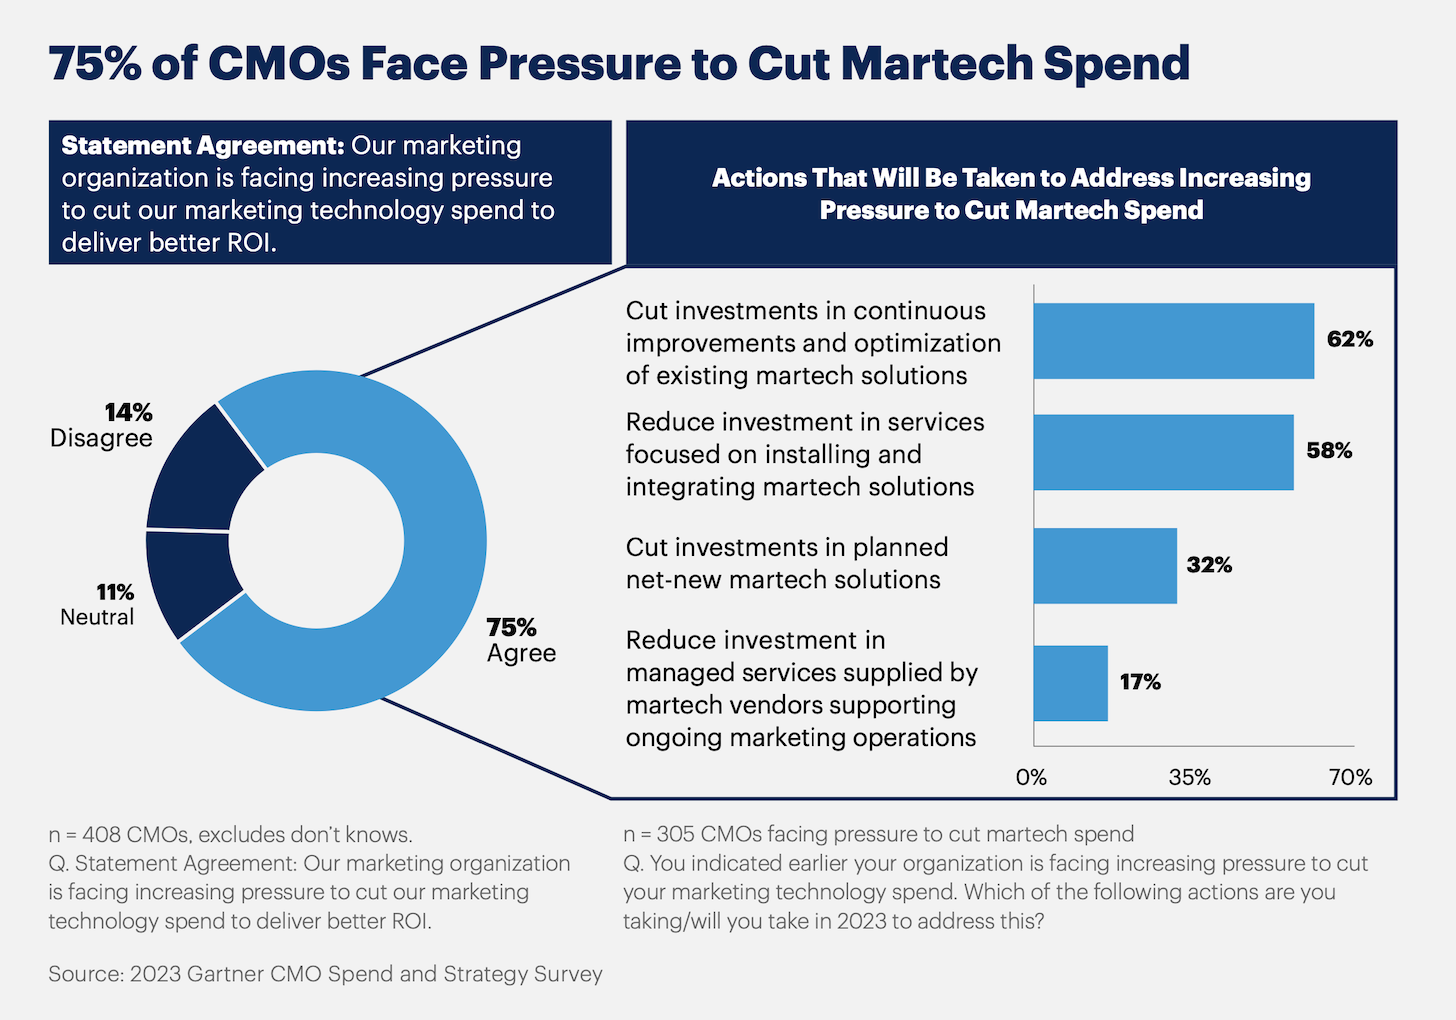 CMO Martech Budget Under Pressure